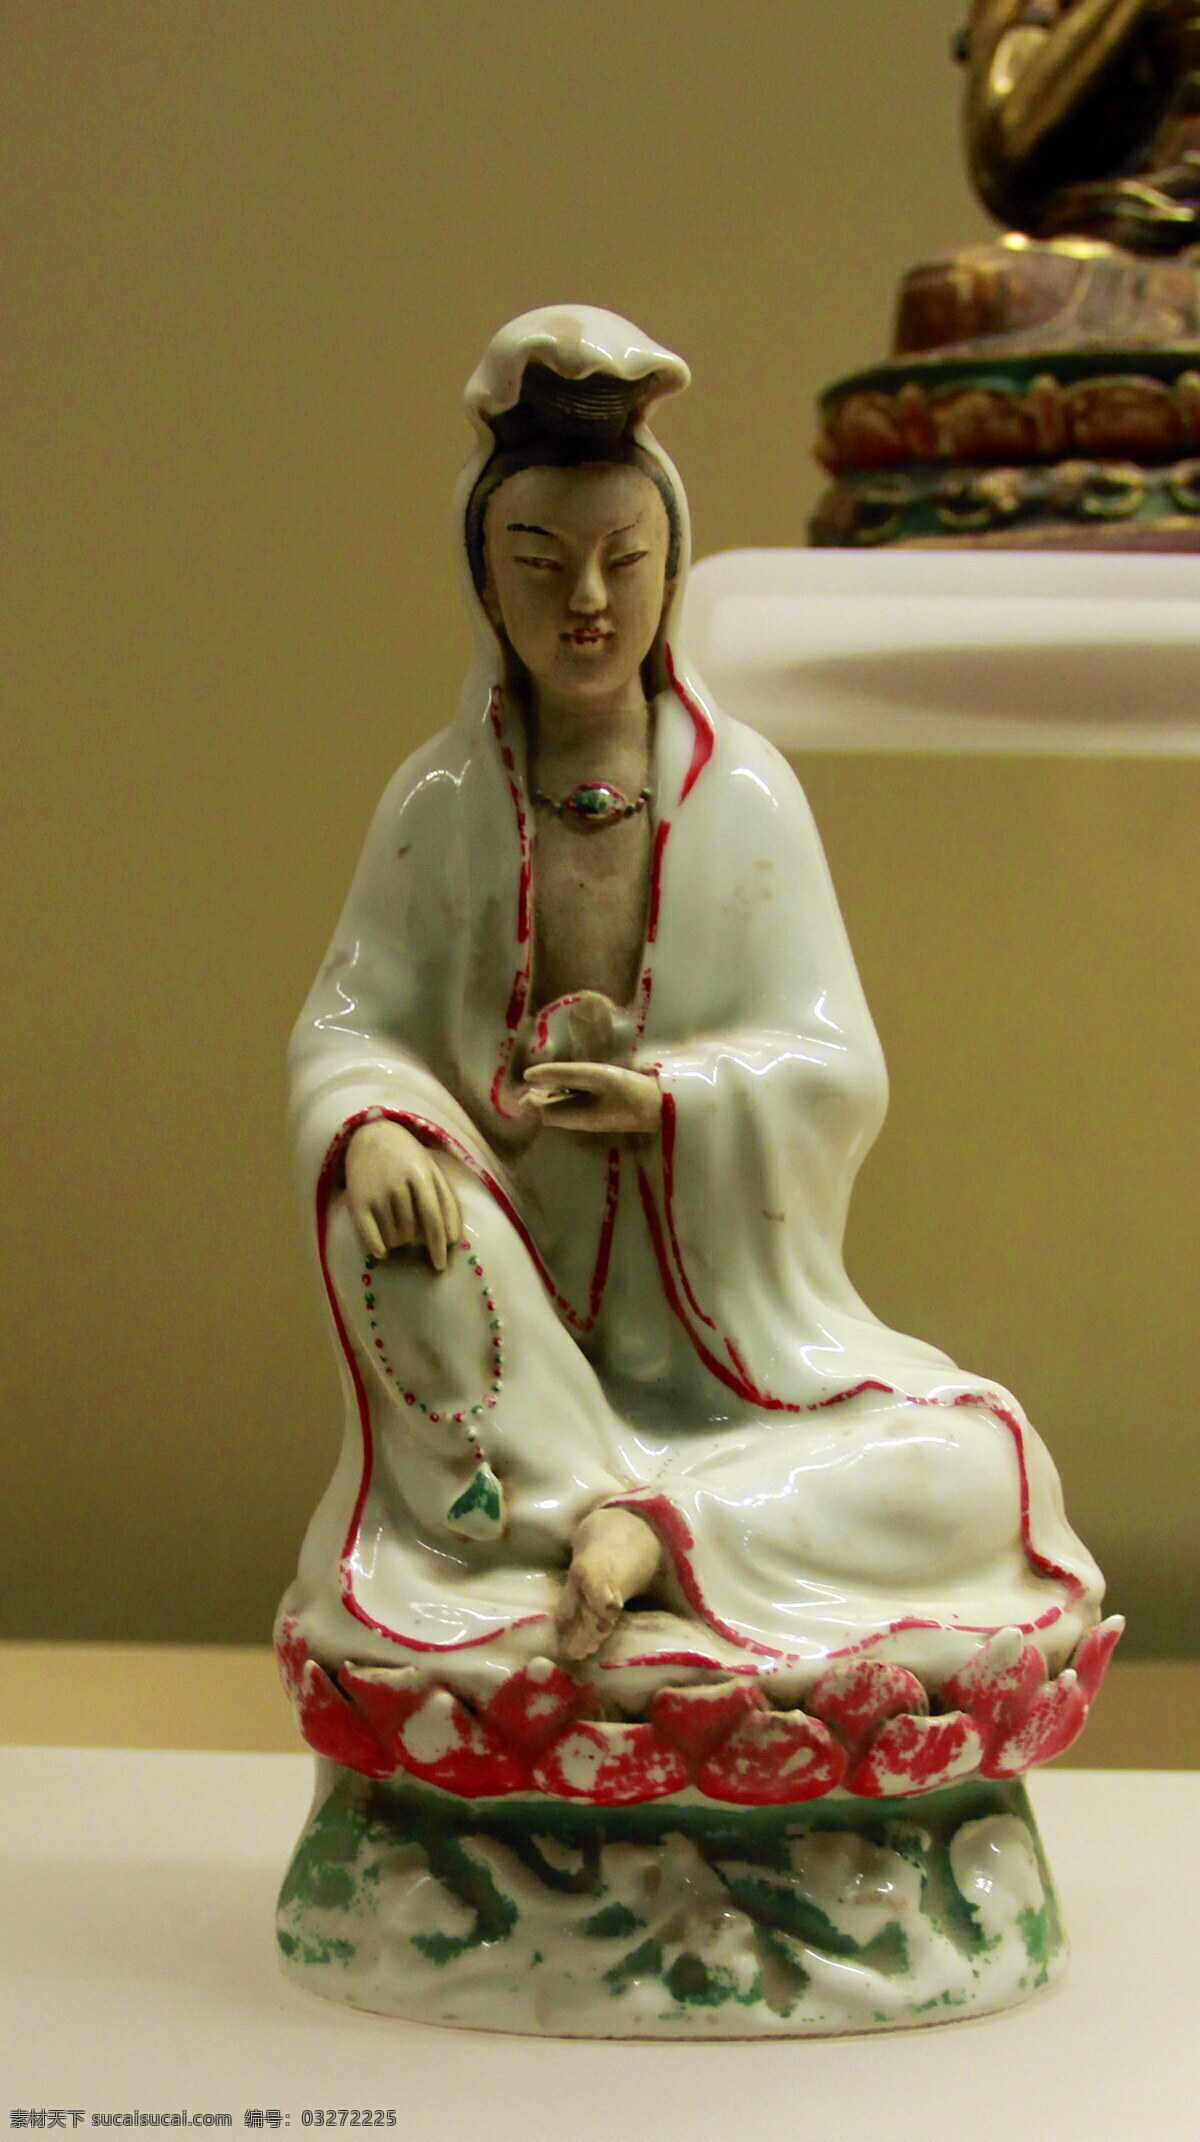 西安 历史博物馆 观音像 历史博物物馆 佛像 文化 佛教 西安文化 传统文化 文化艺术